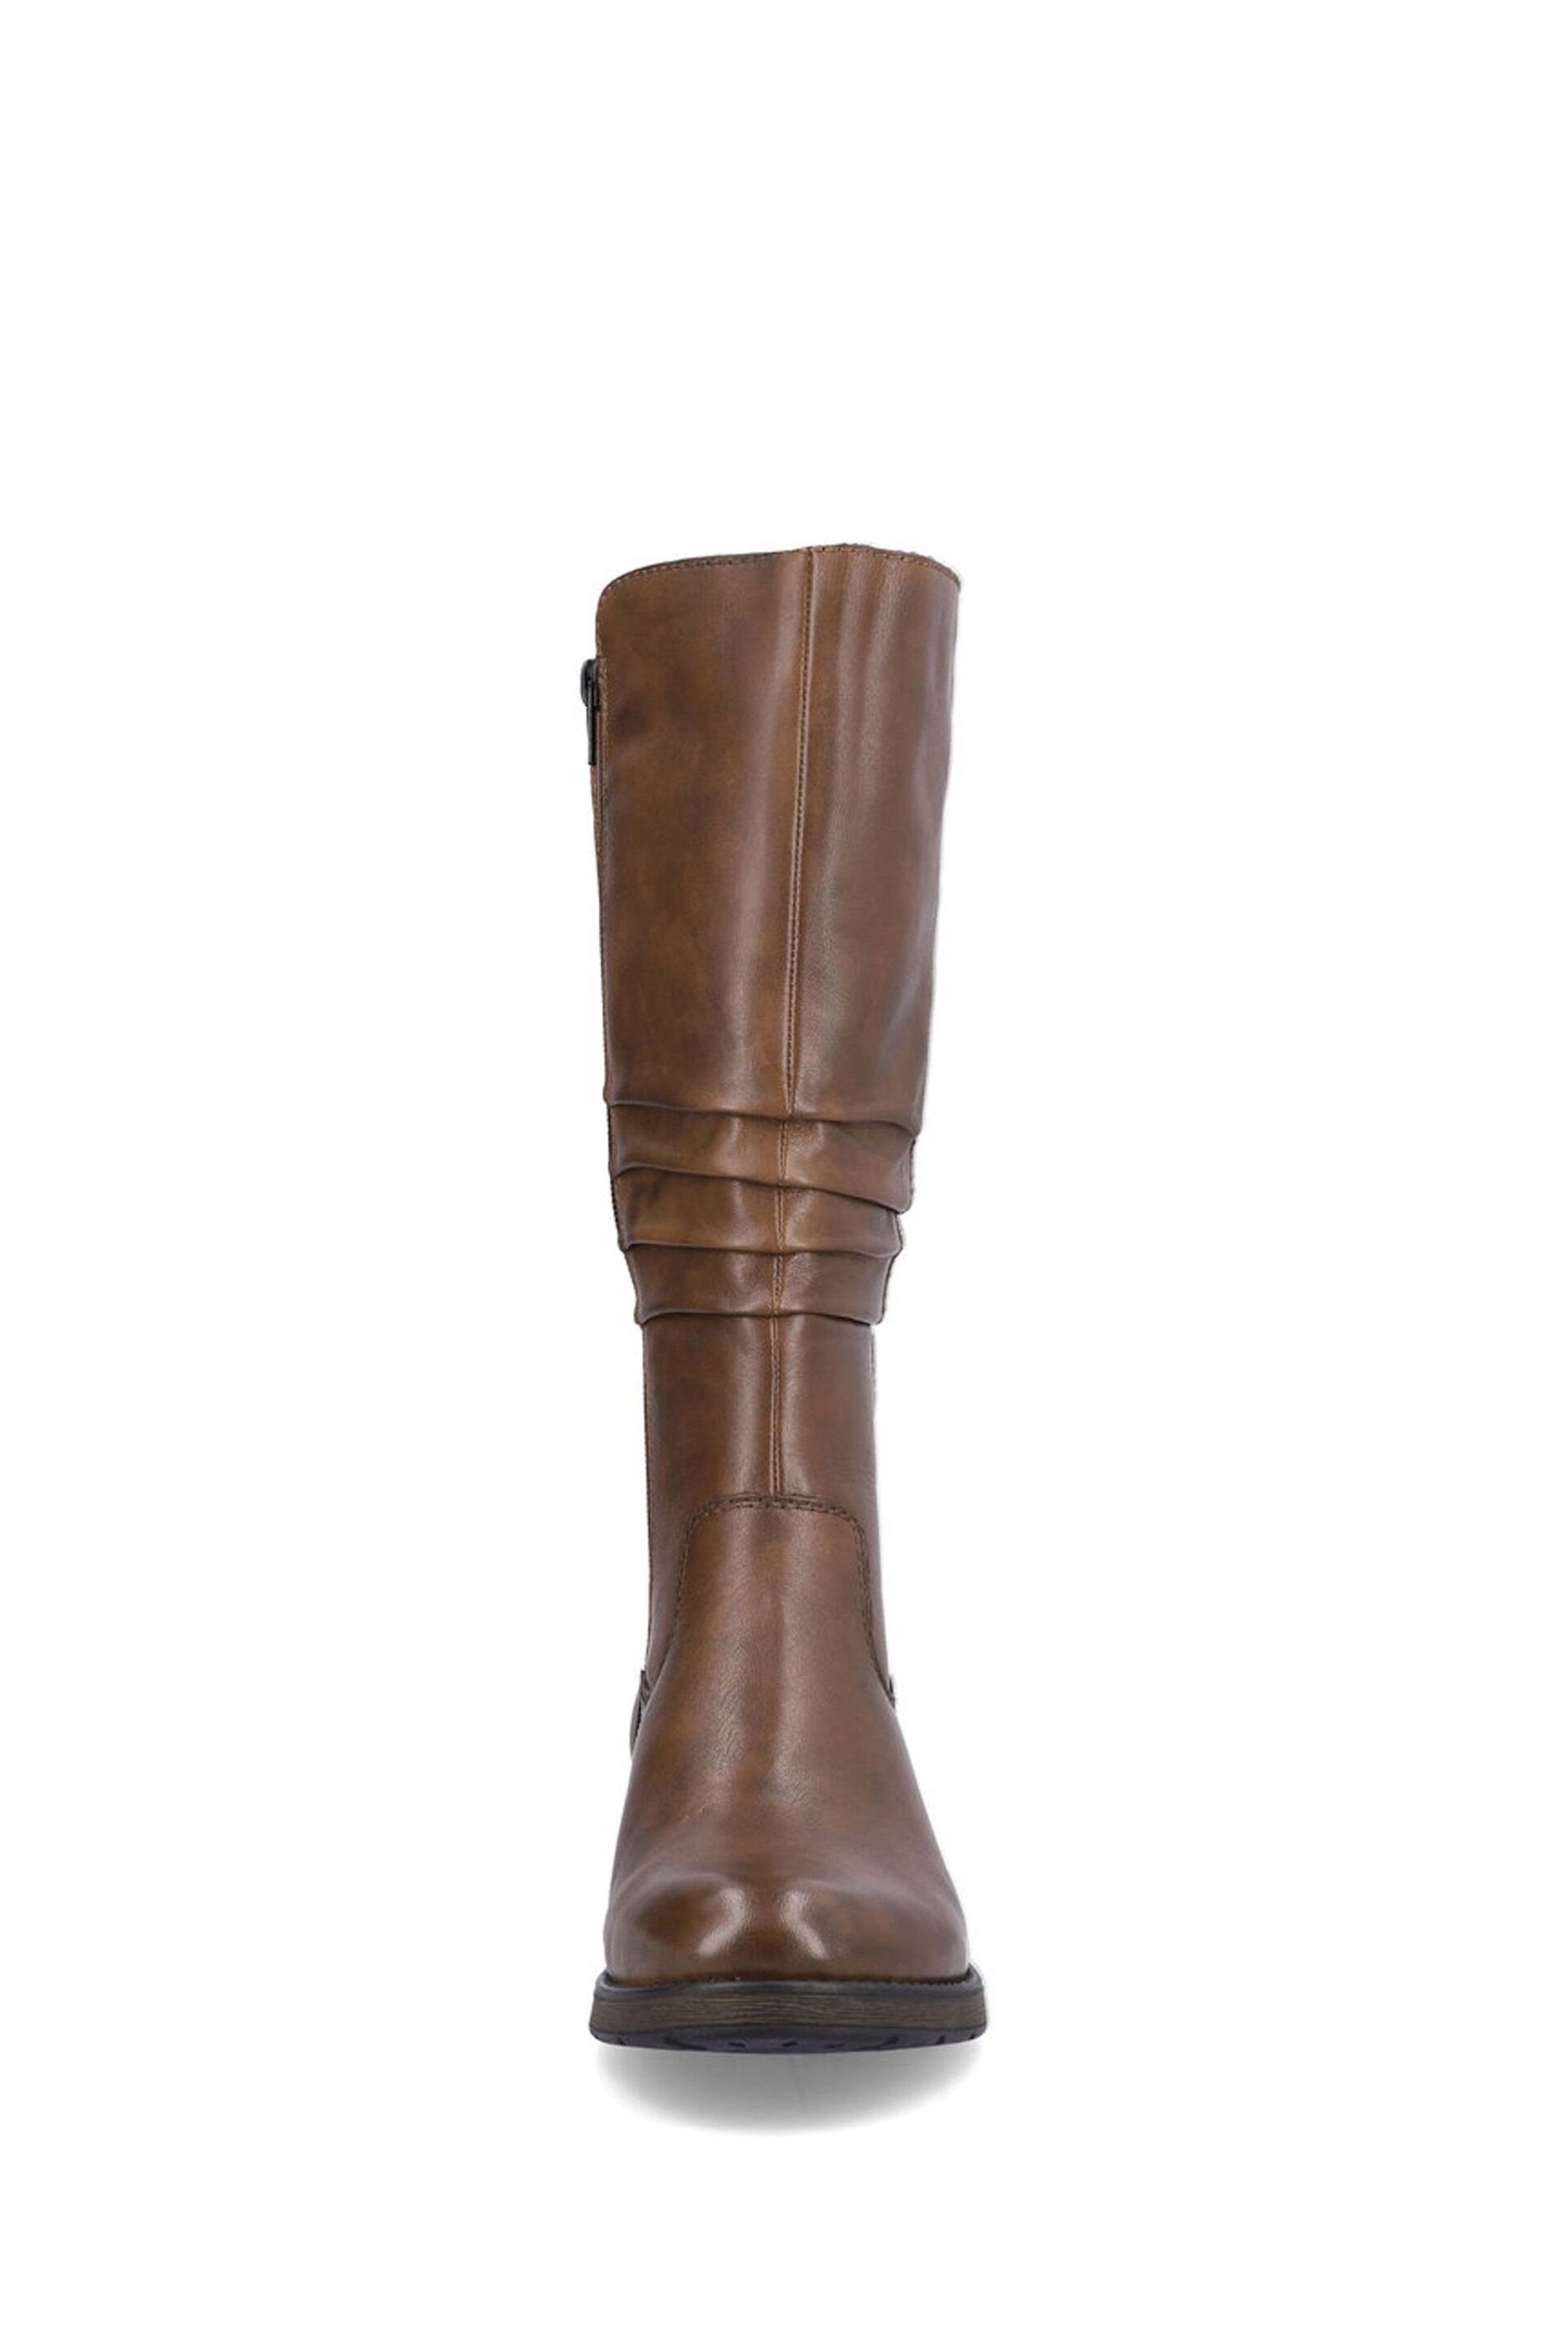 Rieker Womens Zipper Brown Boots - Image 6 of 10